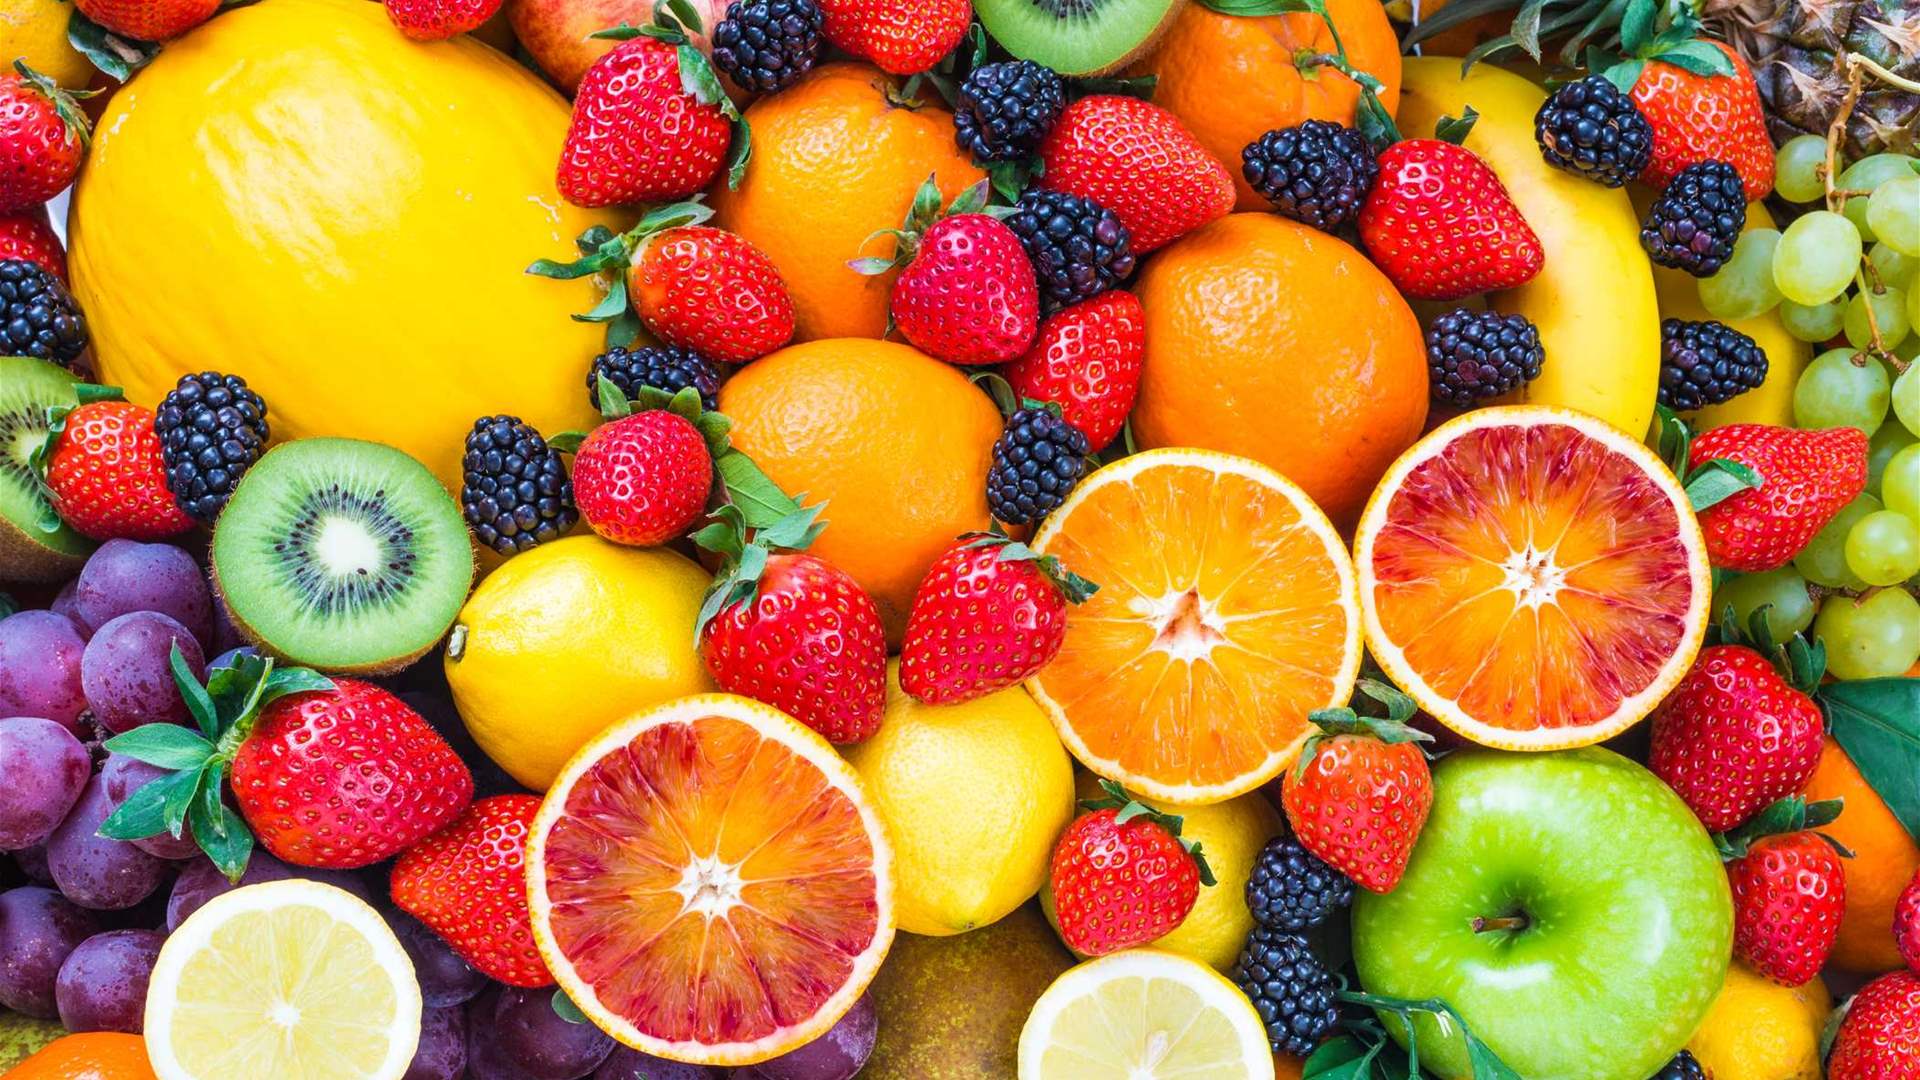 هذا النوع من الفاكهة يحمي من الترسبات الدهنية التي تسبب النوبات القلبية والسكتات الدماغية!